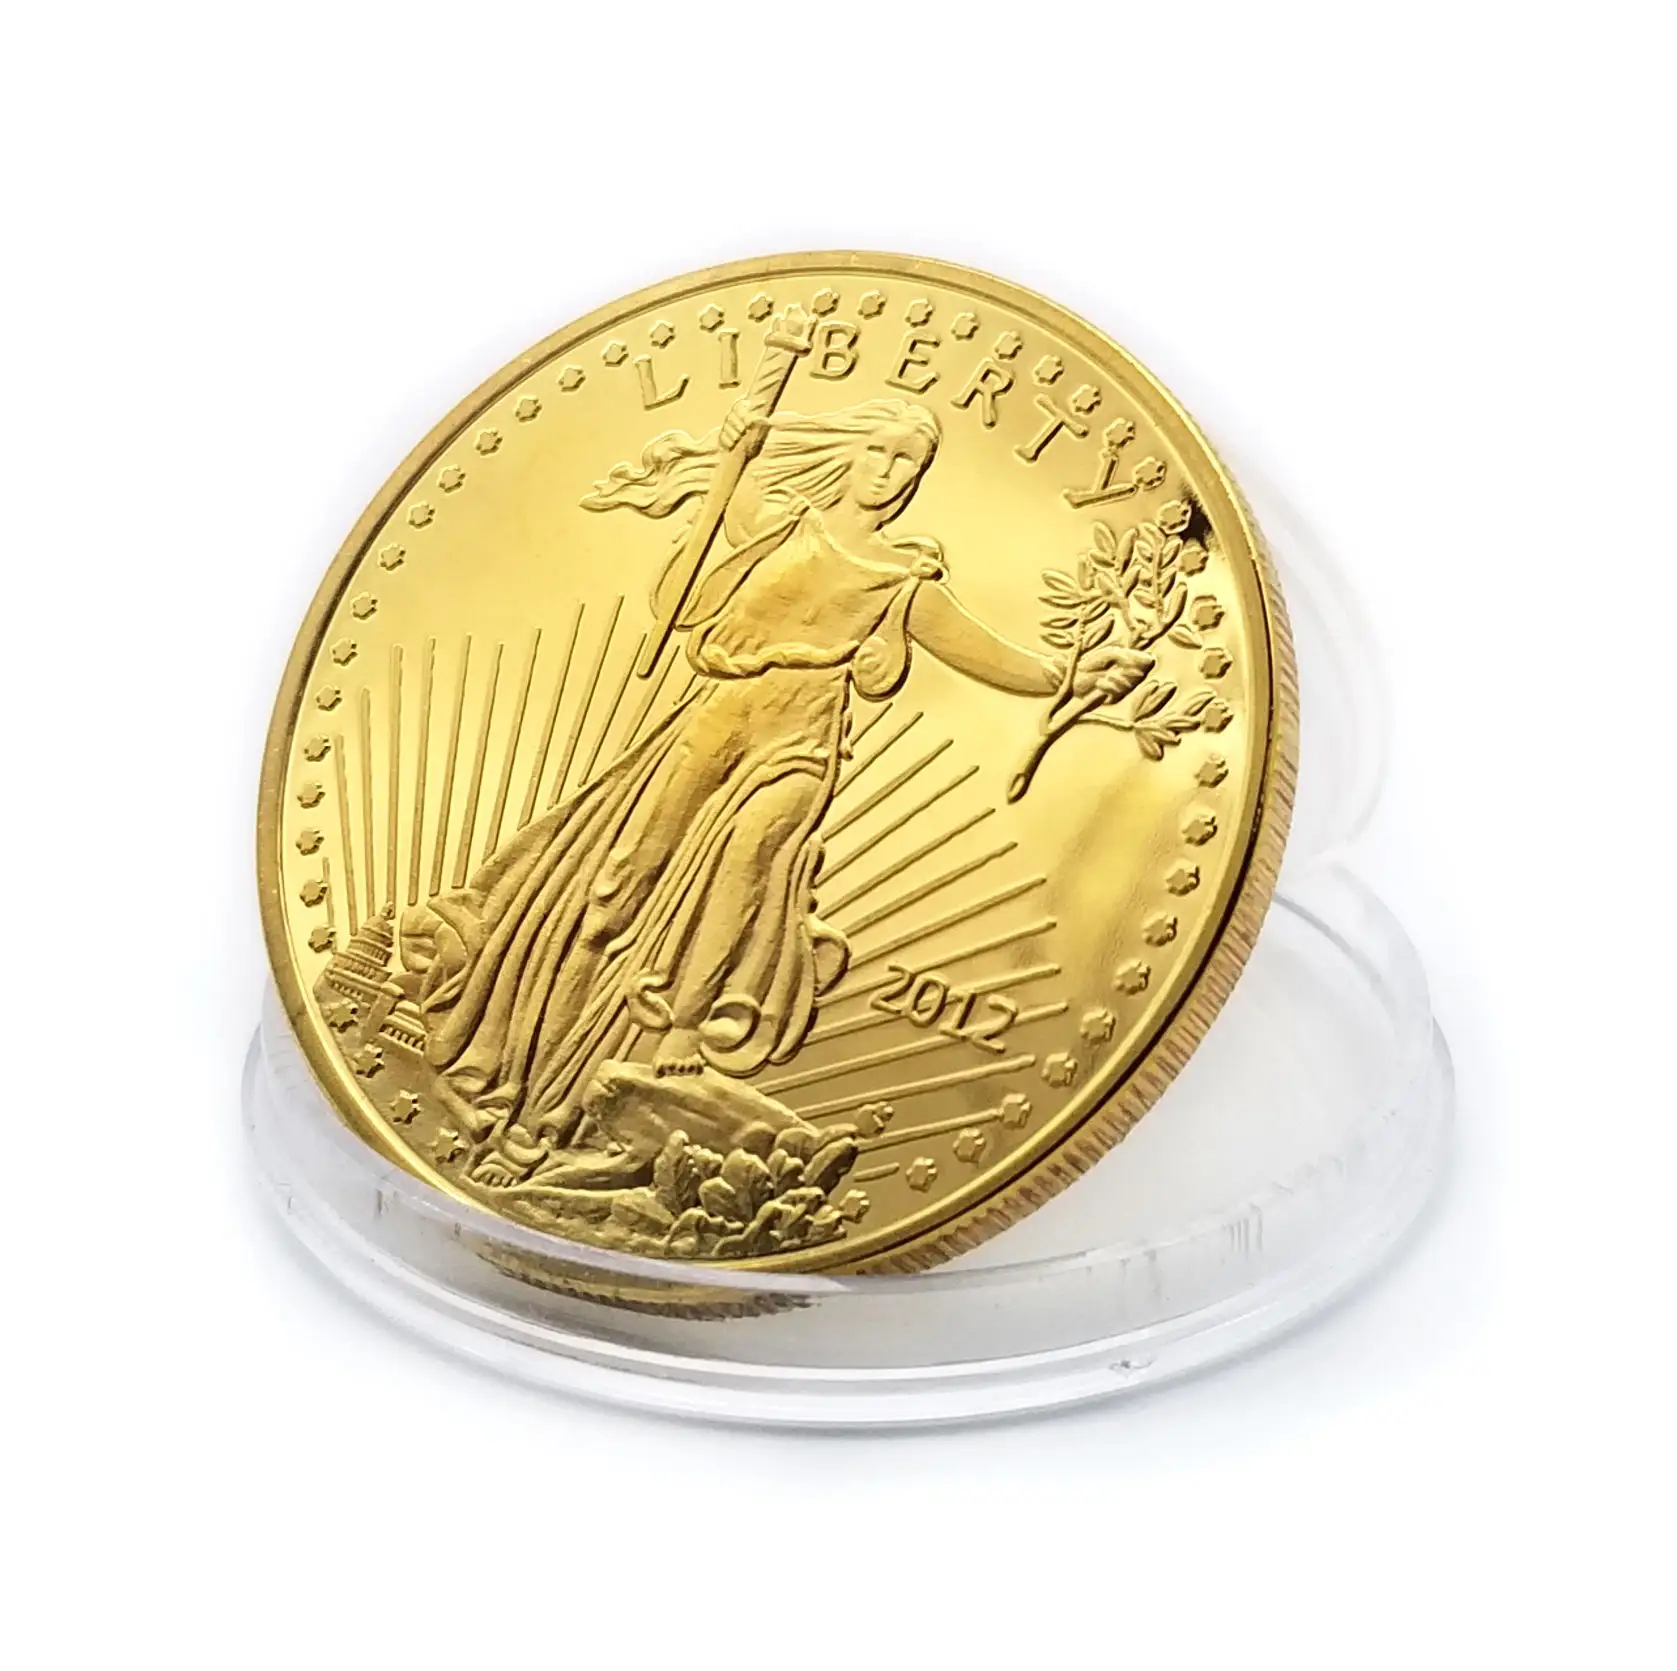 OEM 분기 독수리 1 온스 골드 기념 복제 동전 미국 텅스텐 골드 실버 더블 독수리 우리 동전